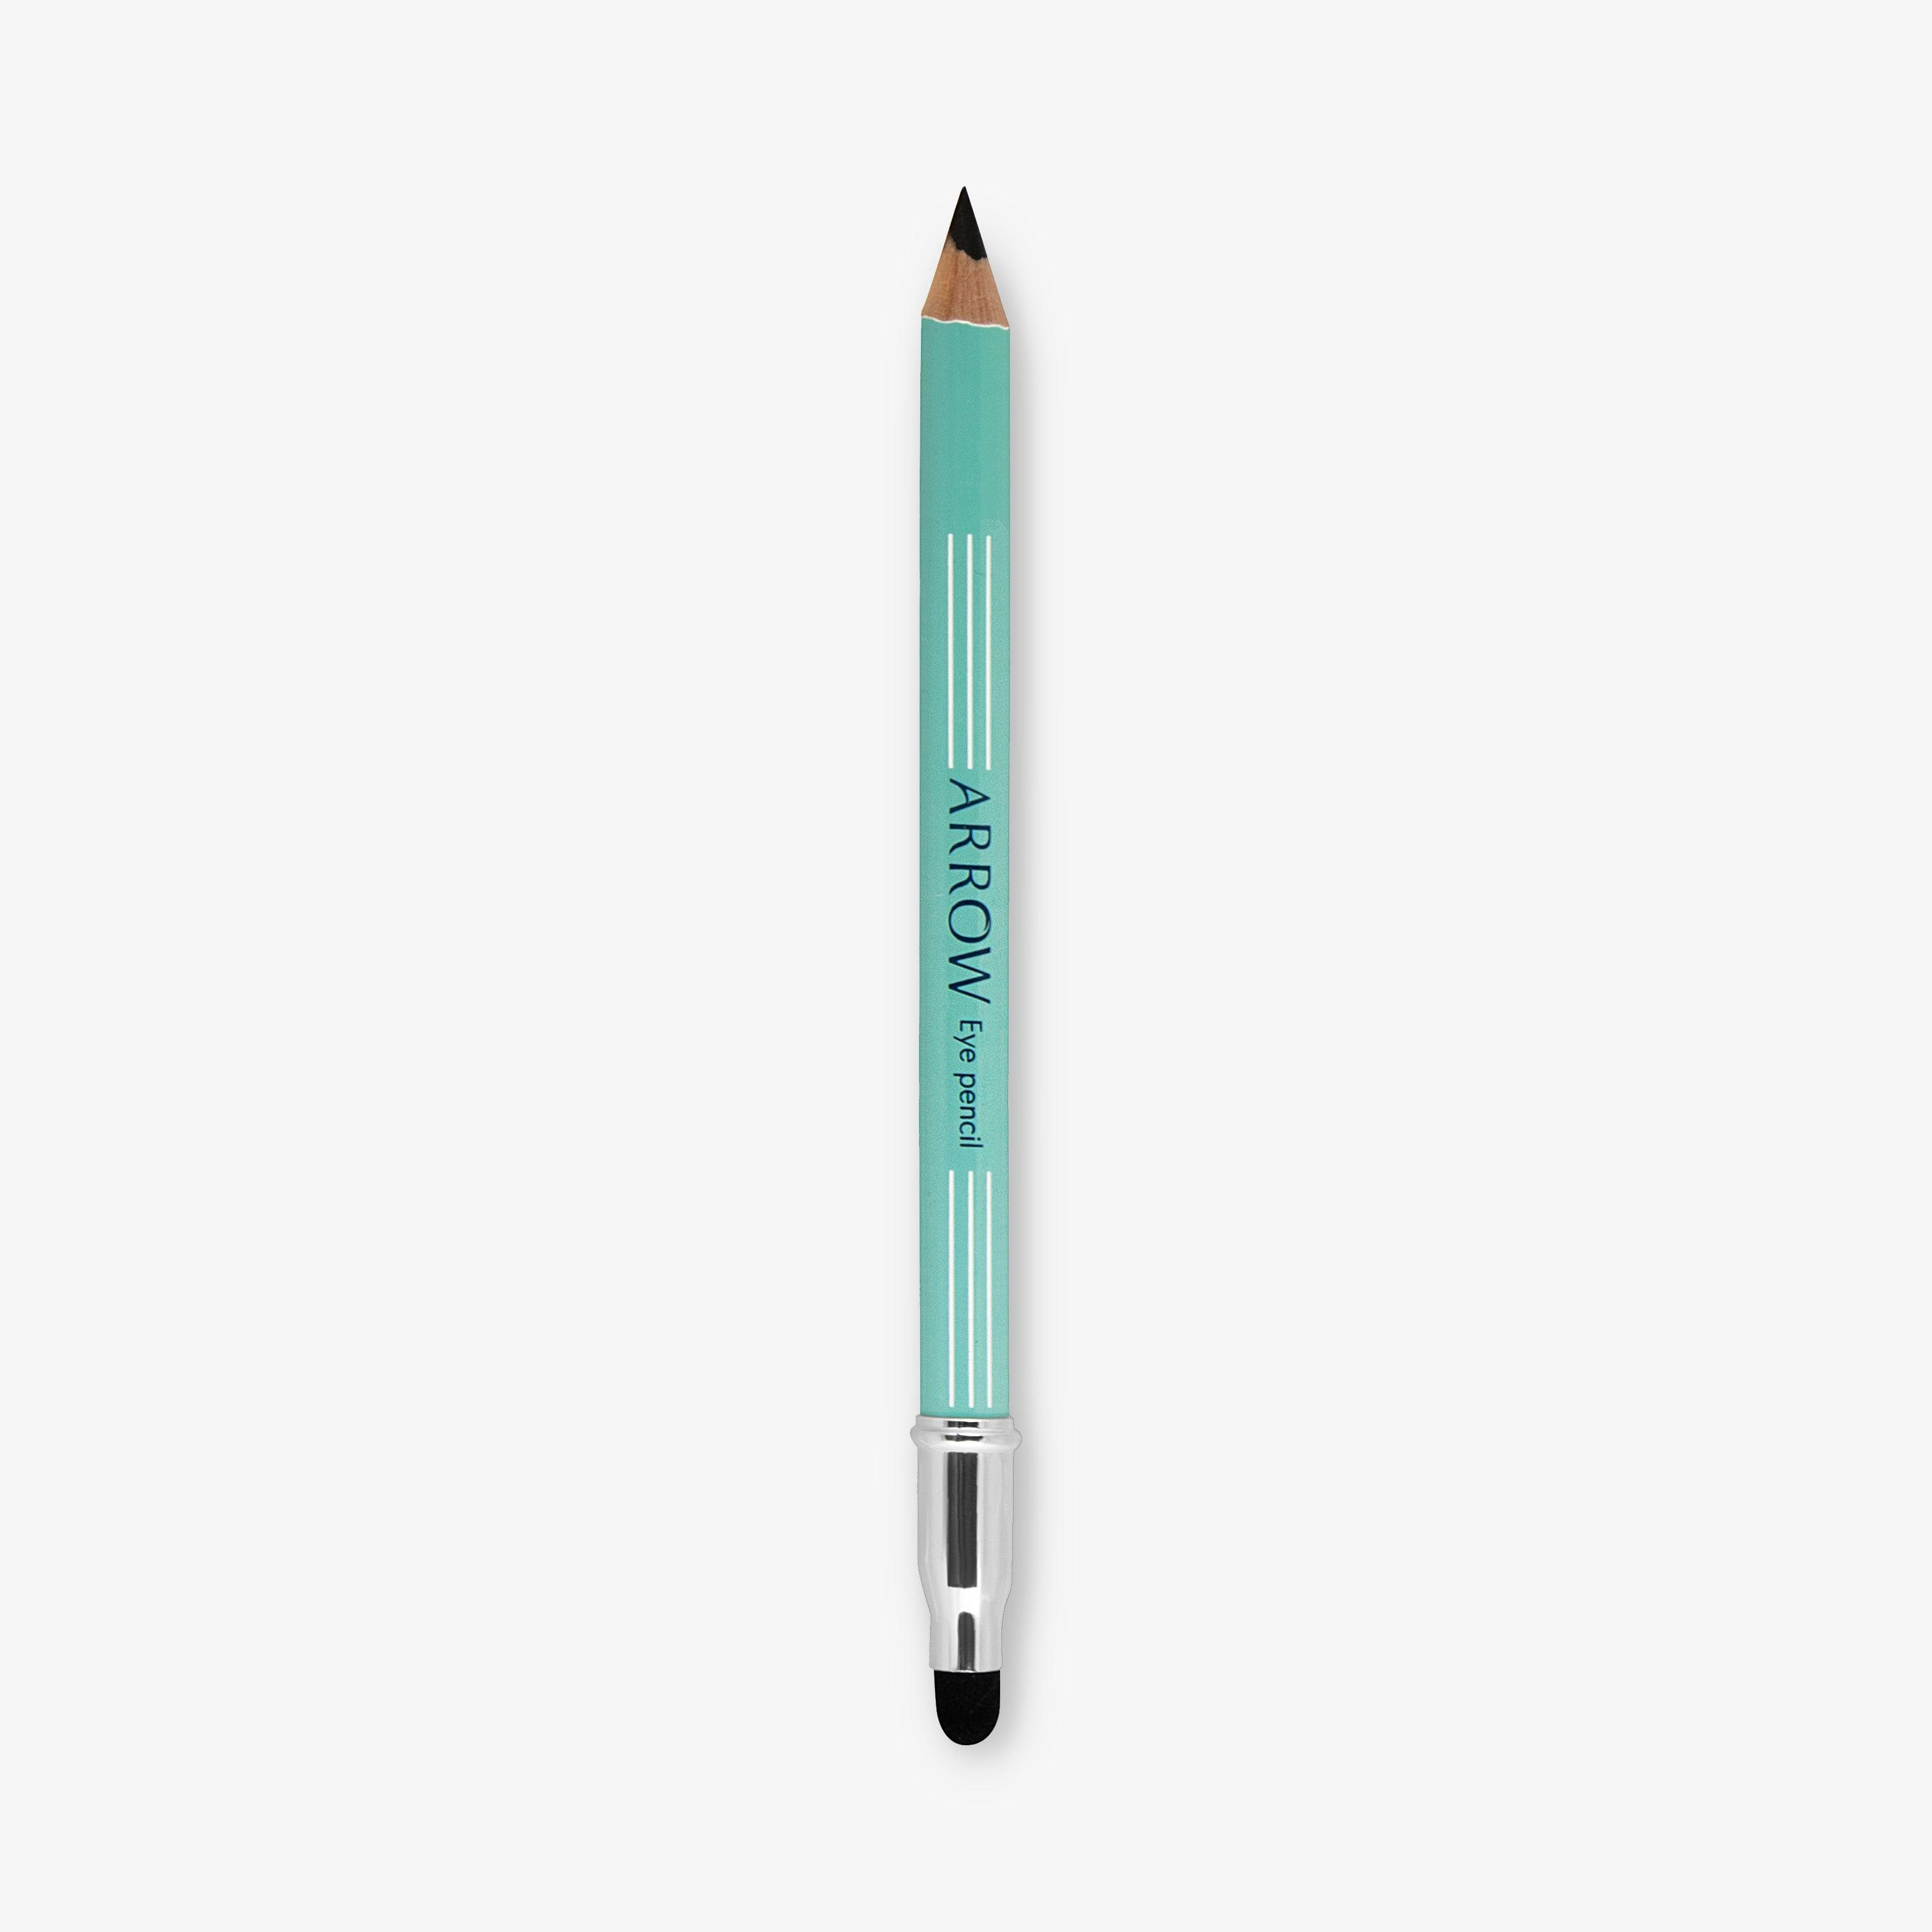 Orphica arrow eye pencil - SerumGeeks